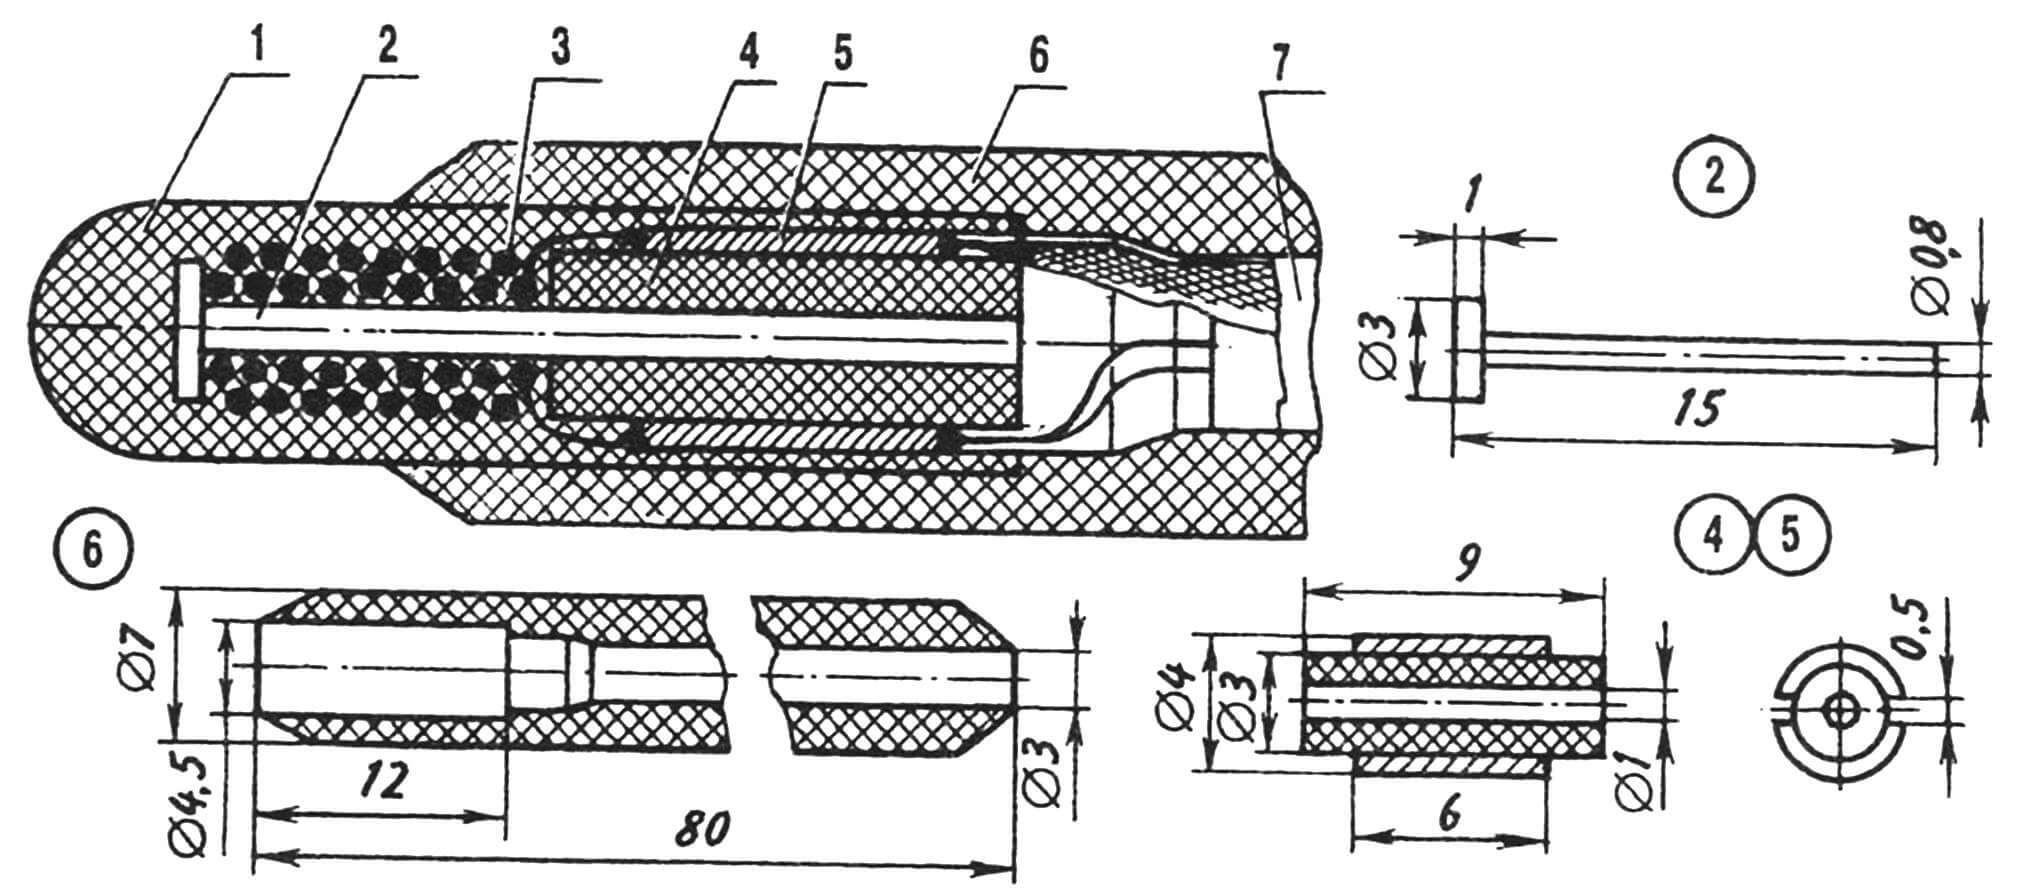 Конструкция термодатчика: 1 — слой компаунда ЭП-773, 2 — стержень направляющий, 3 — бифилярная обмотка (провод ПЭТВ-0,03 ø 1,1), 4 — втулка керамическая (от низкоомного резистора МЛТ-0,25), 5 — ламель медная (2 шт.), 6 — державка (стеклотекстолит), 7 — кабель КММ-2.